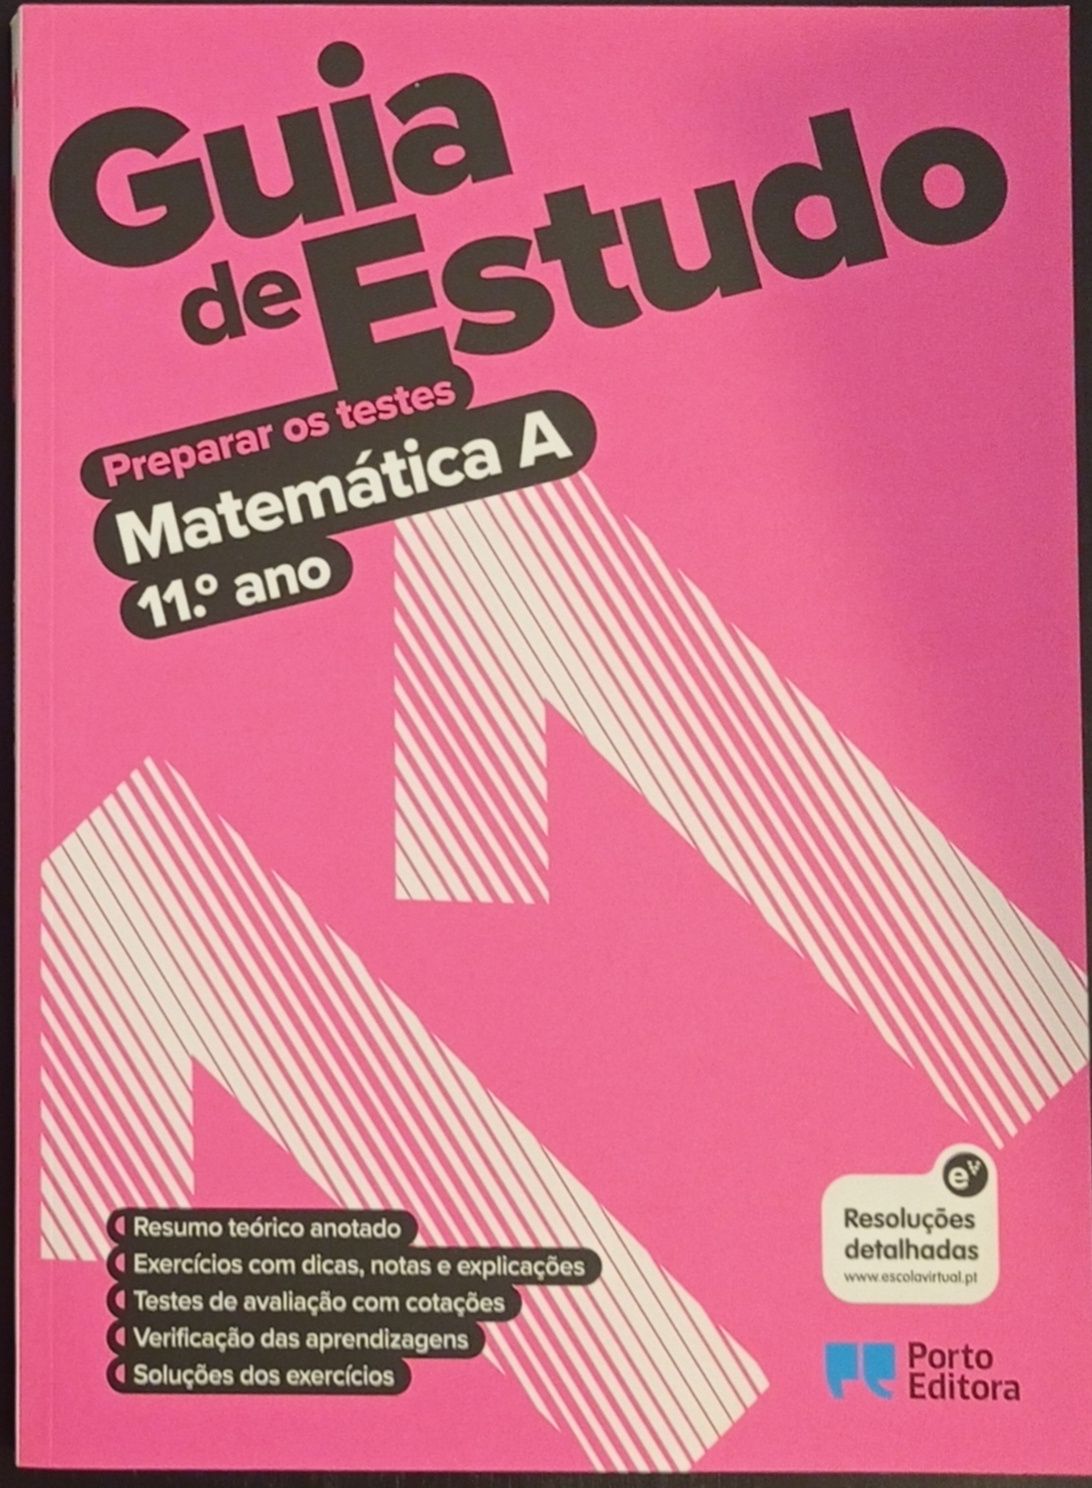 Guia de Estudo - 11° ano (Português + Matemática A) Preparar testes